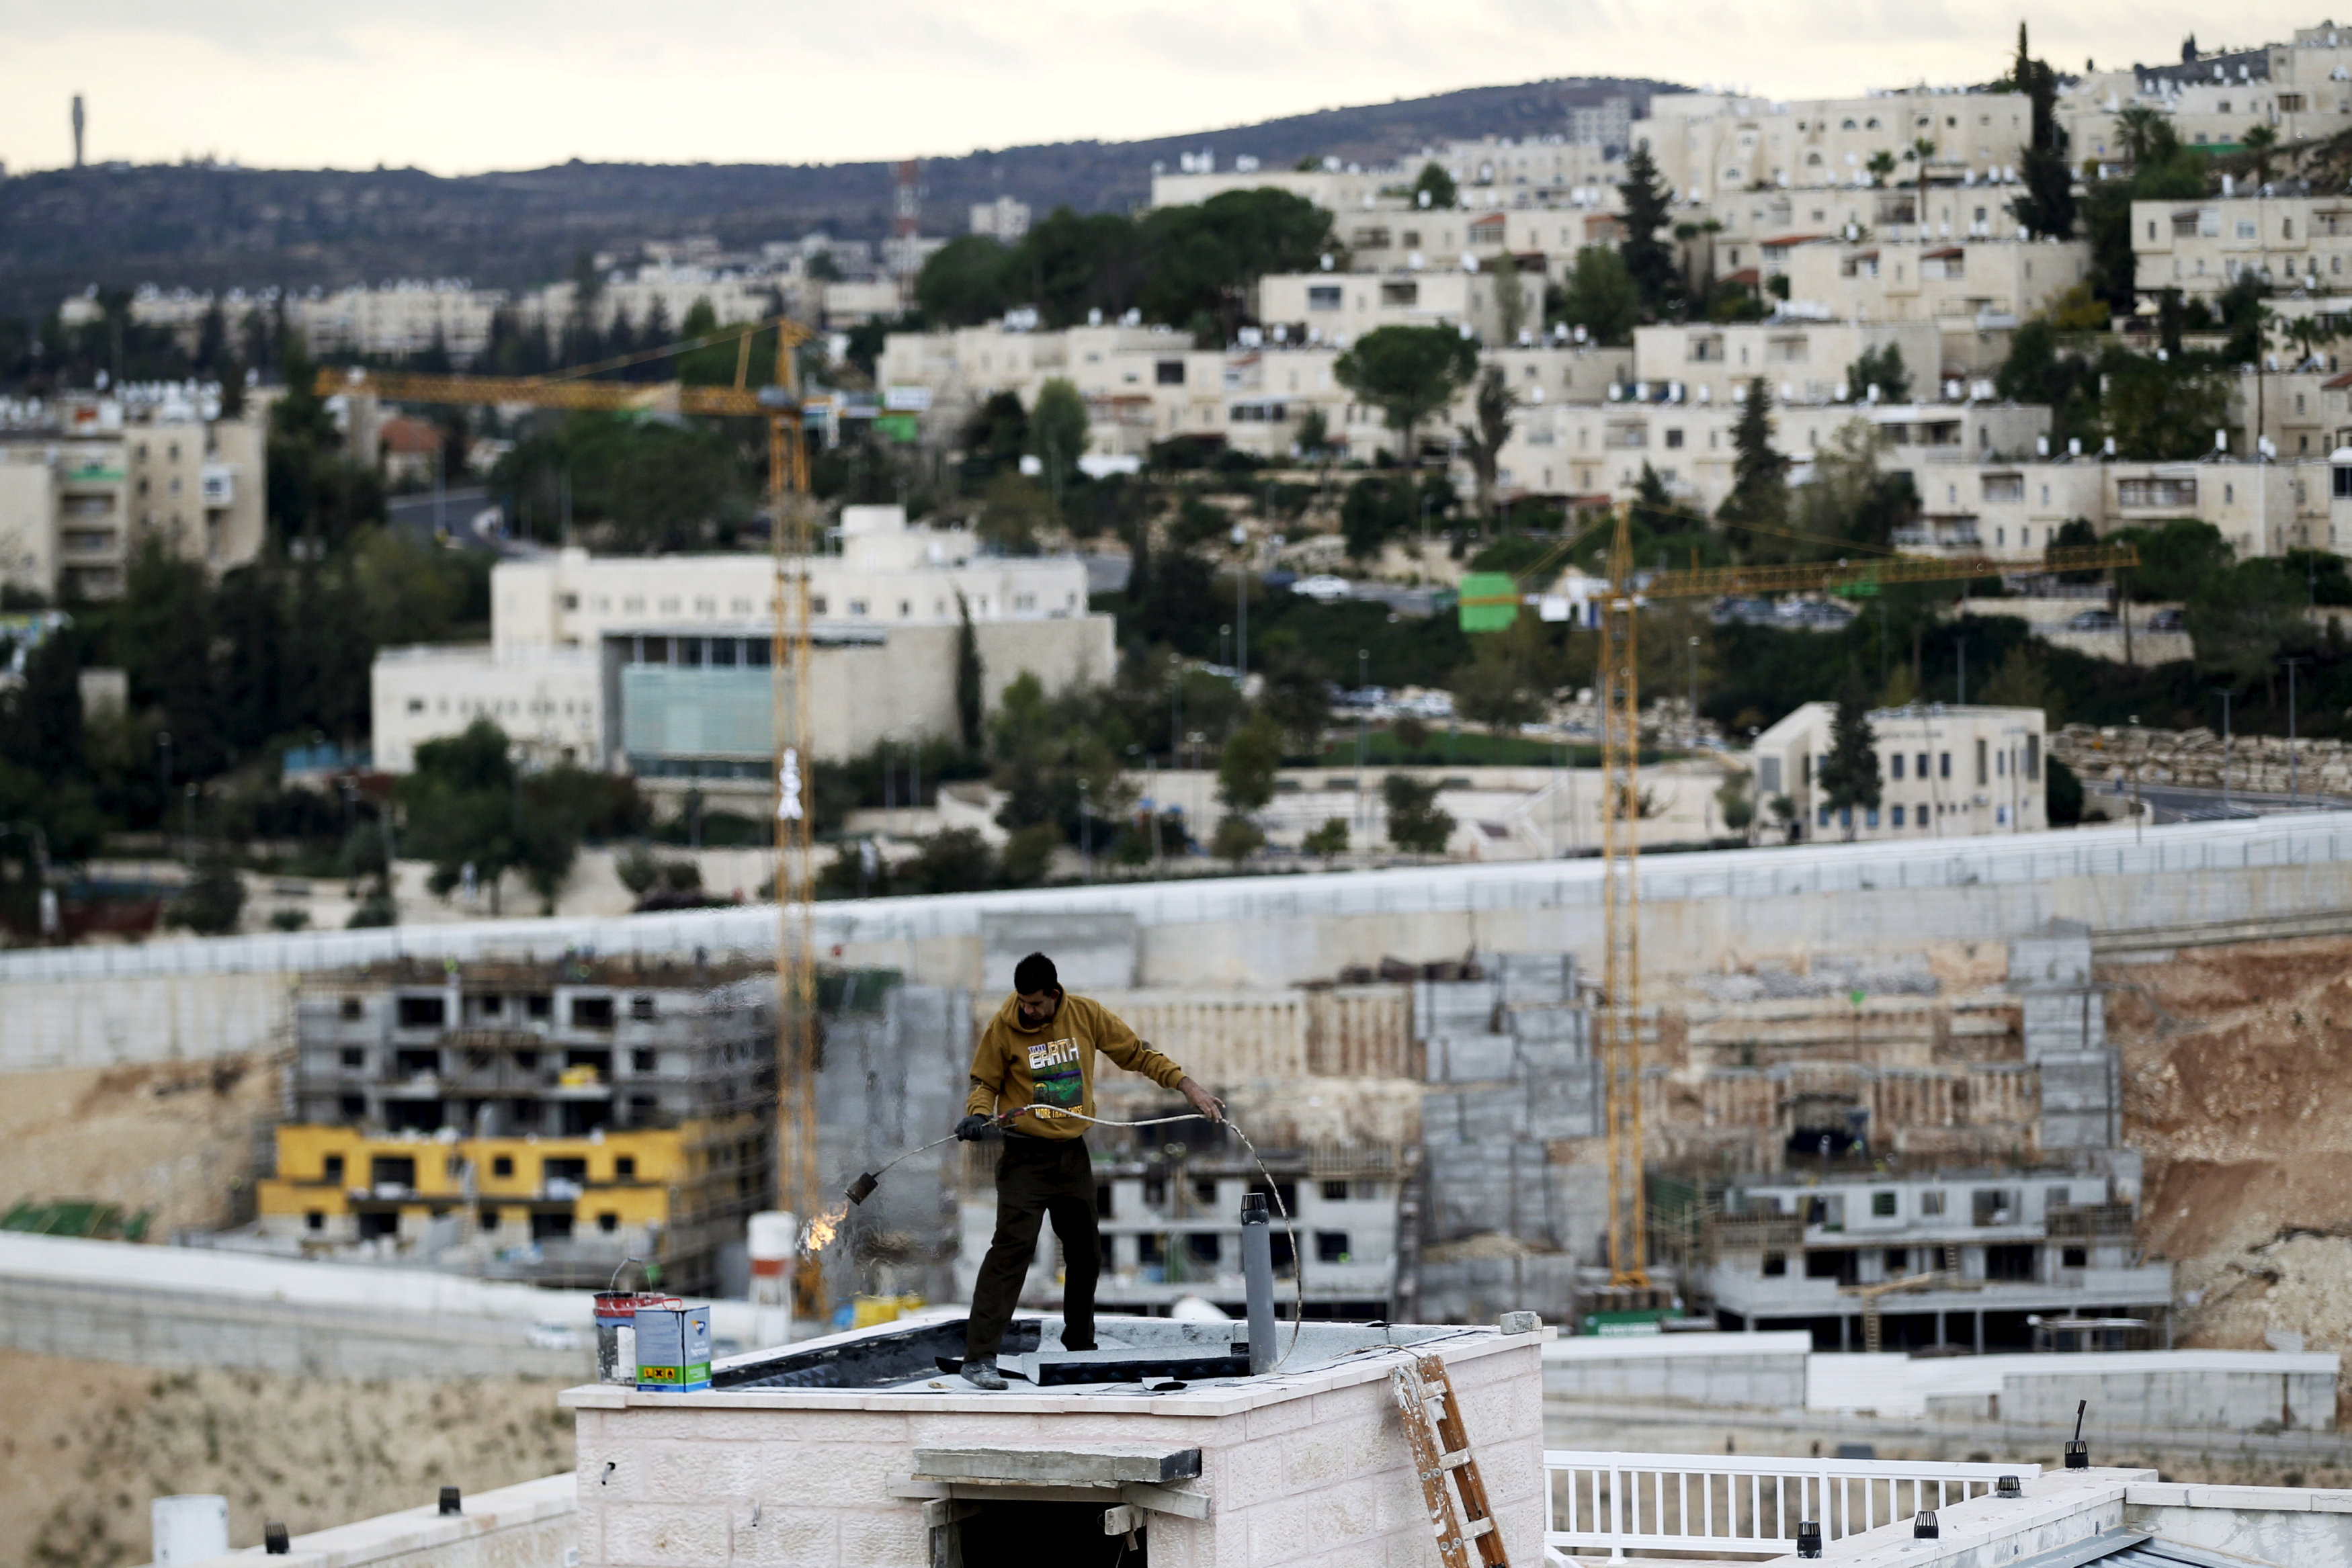 Ο δήμος της Ιερουσάλημ ενέκρινε σχέδιο για 560 σπίτια σε εβραϊκούς οικισμούς